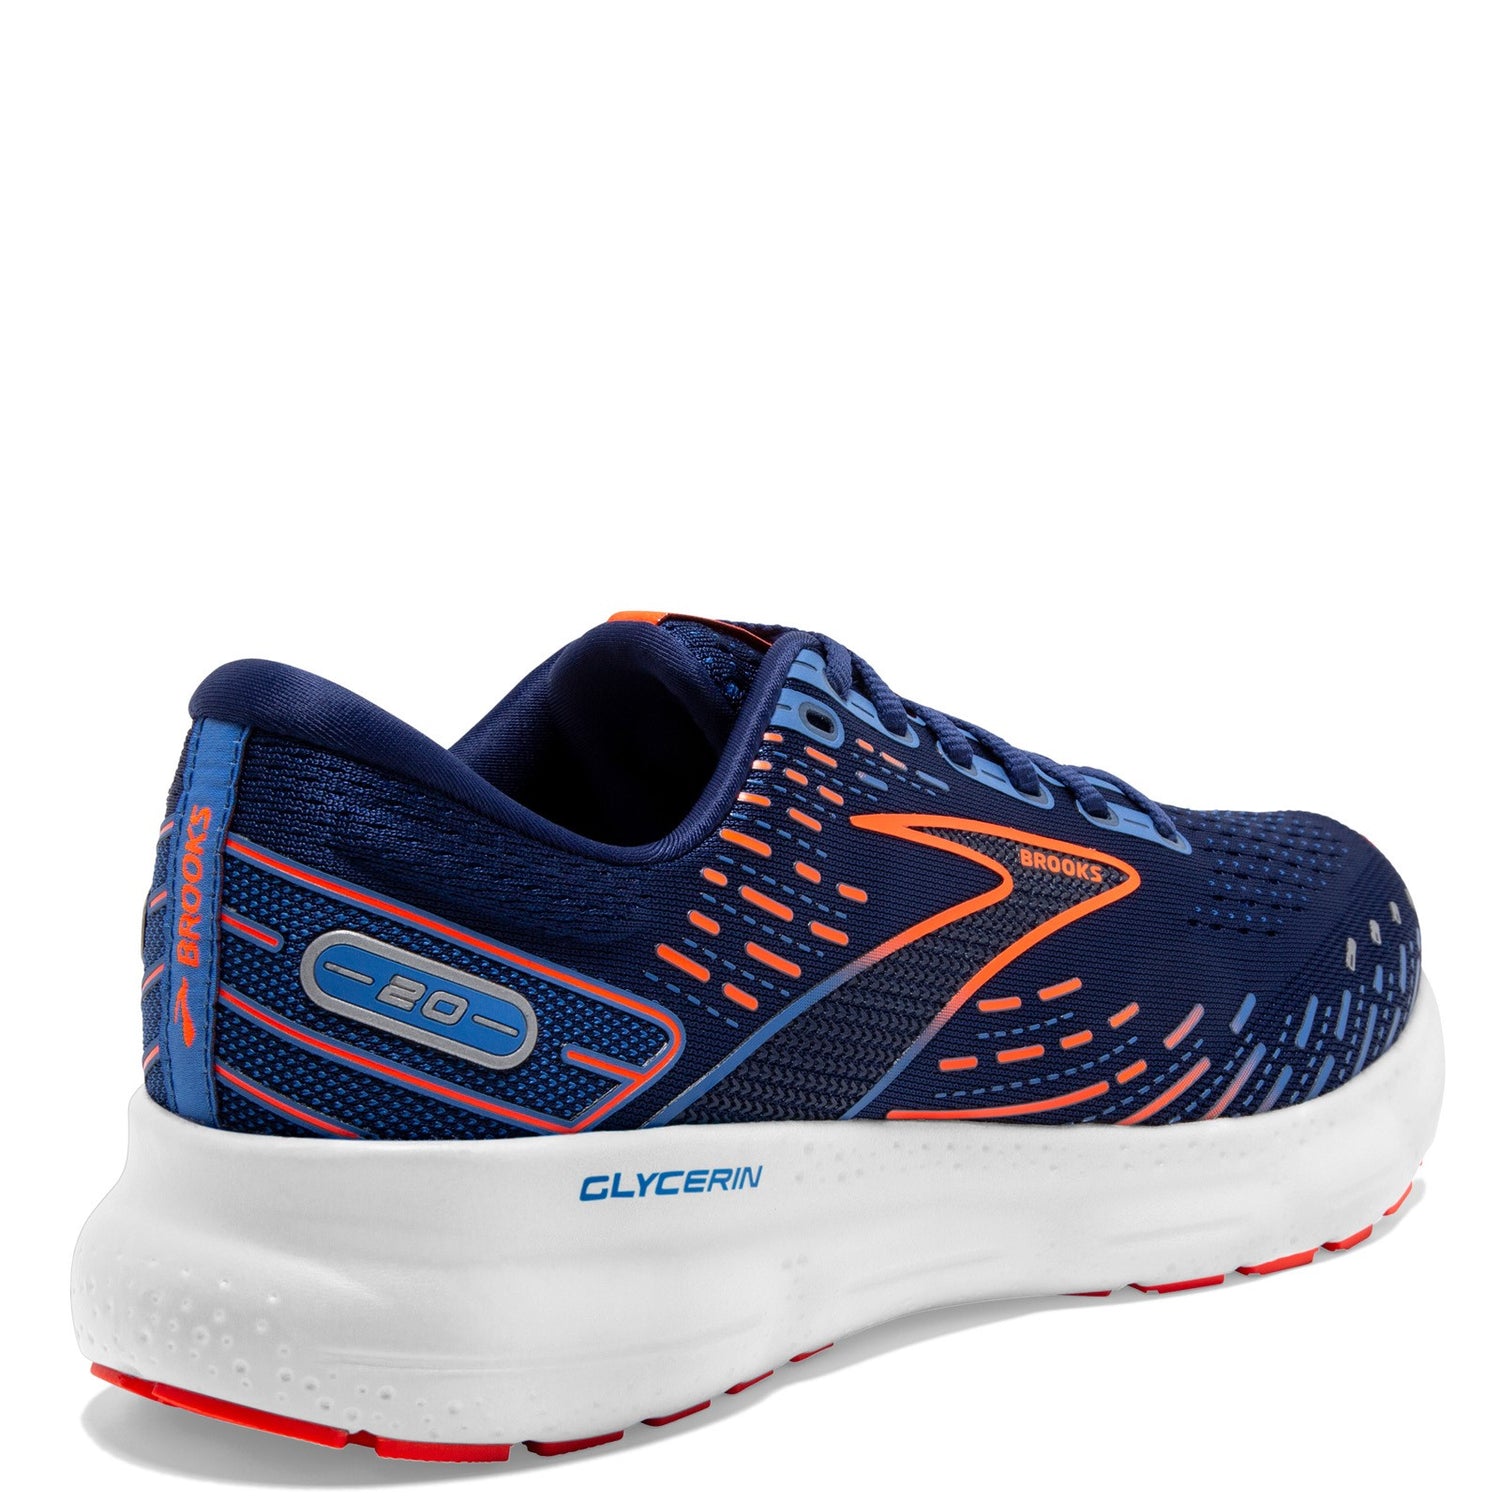 Peltz Shoes  Men's Brooks Glycerin 20 Running Shoe - Wide Width Blue/Orange 110382 2E 444